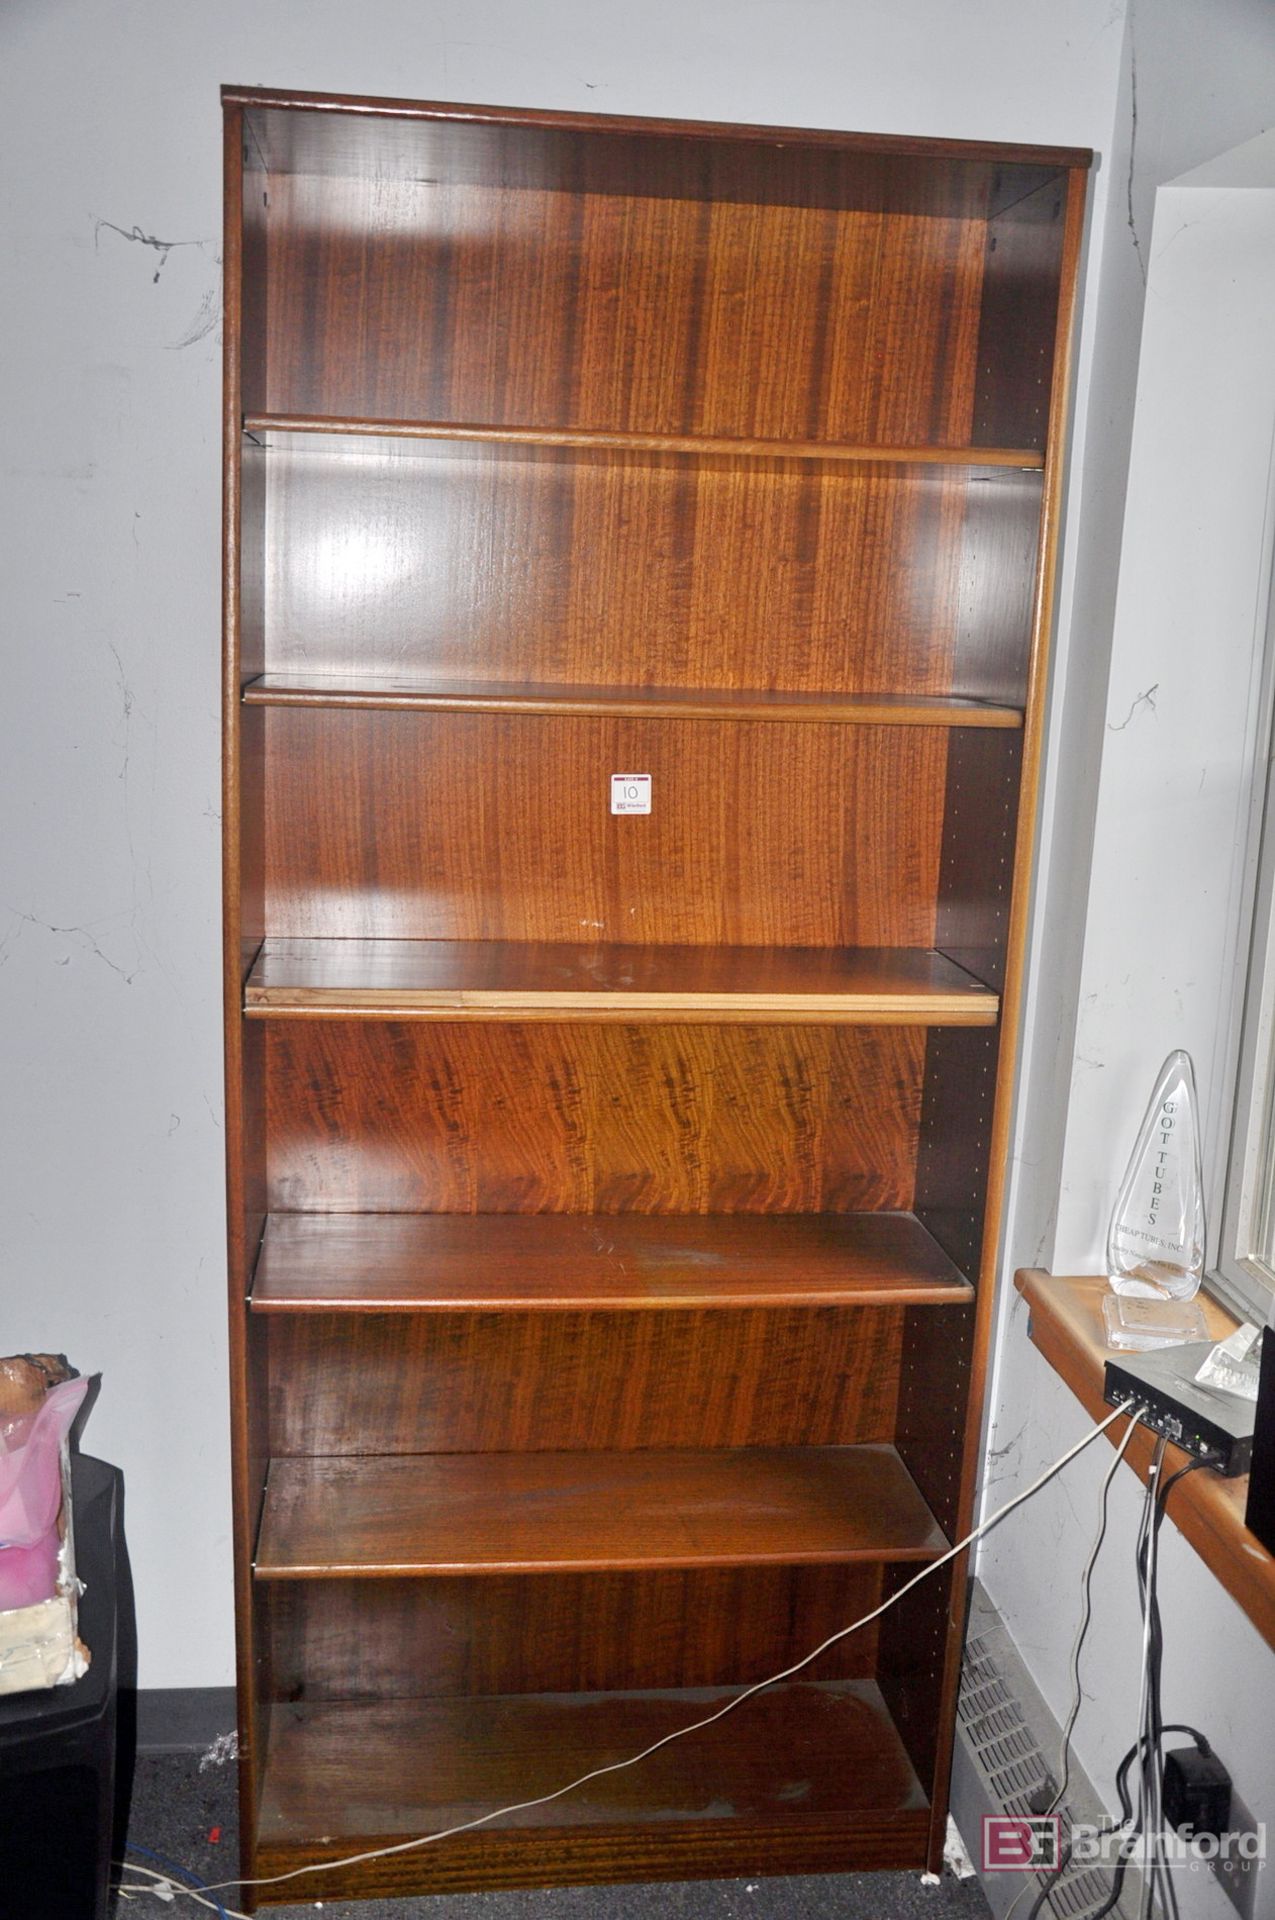 36" X 12" X 84" wood grain 6-shelf bookcase